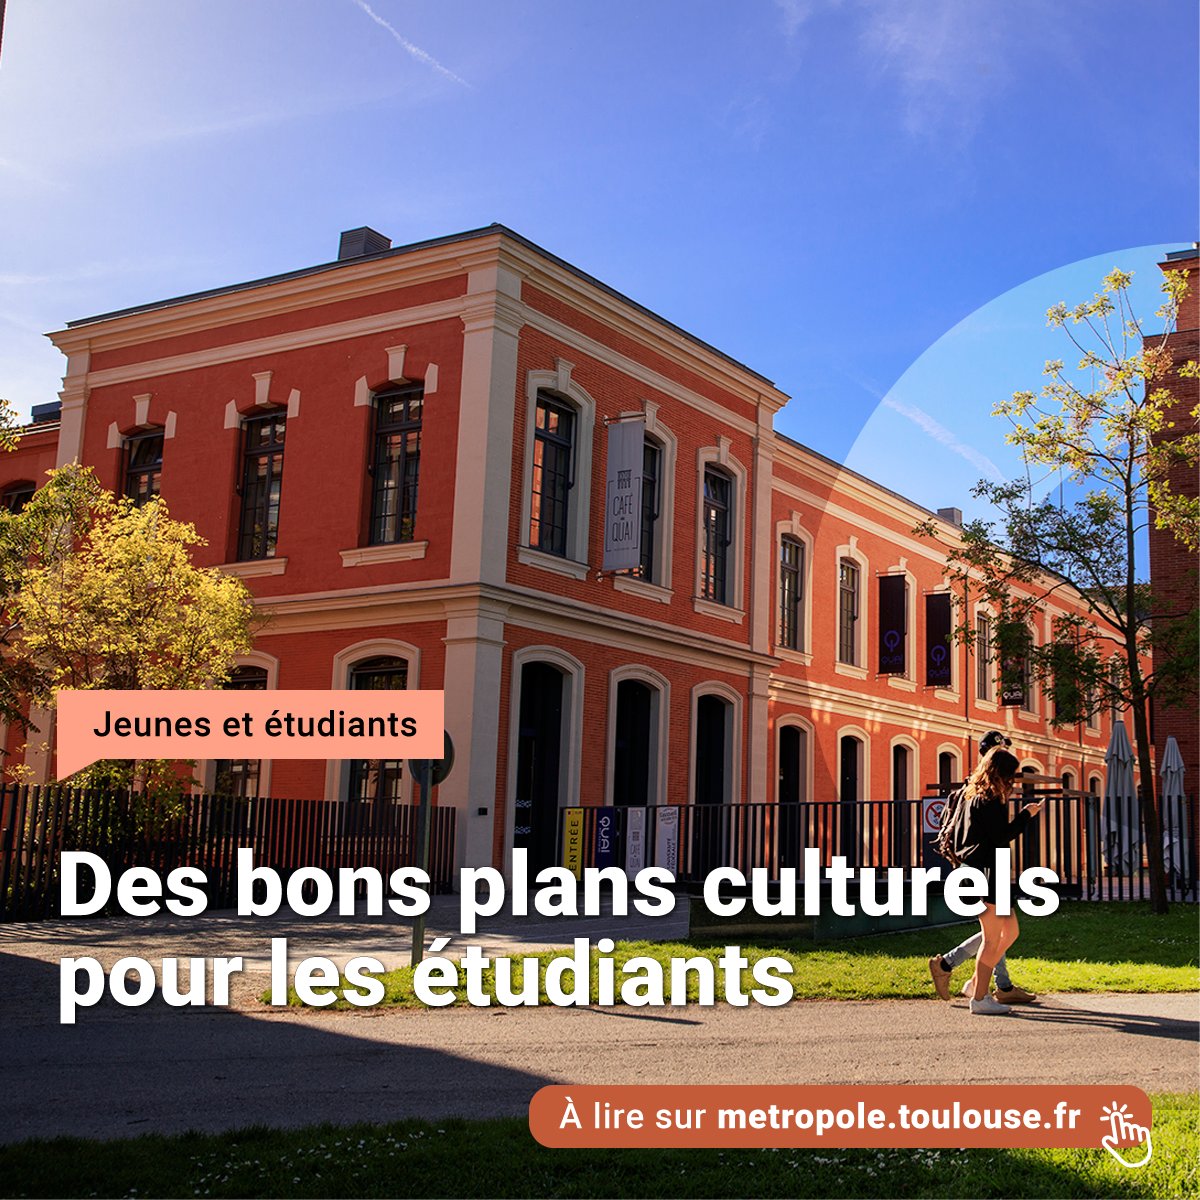 🎟️ Étudiants, voici un panorama d'idées pour profiter de la programmation culturelle à Toulouse : - Événements à ne pas manquer jusqu'en juin - Bons plans à connaître - Tarifs réduits dans les lieux culturels 🔗 bit.ly/43kqt0r